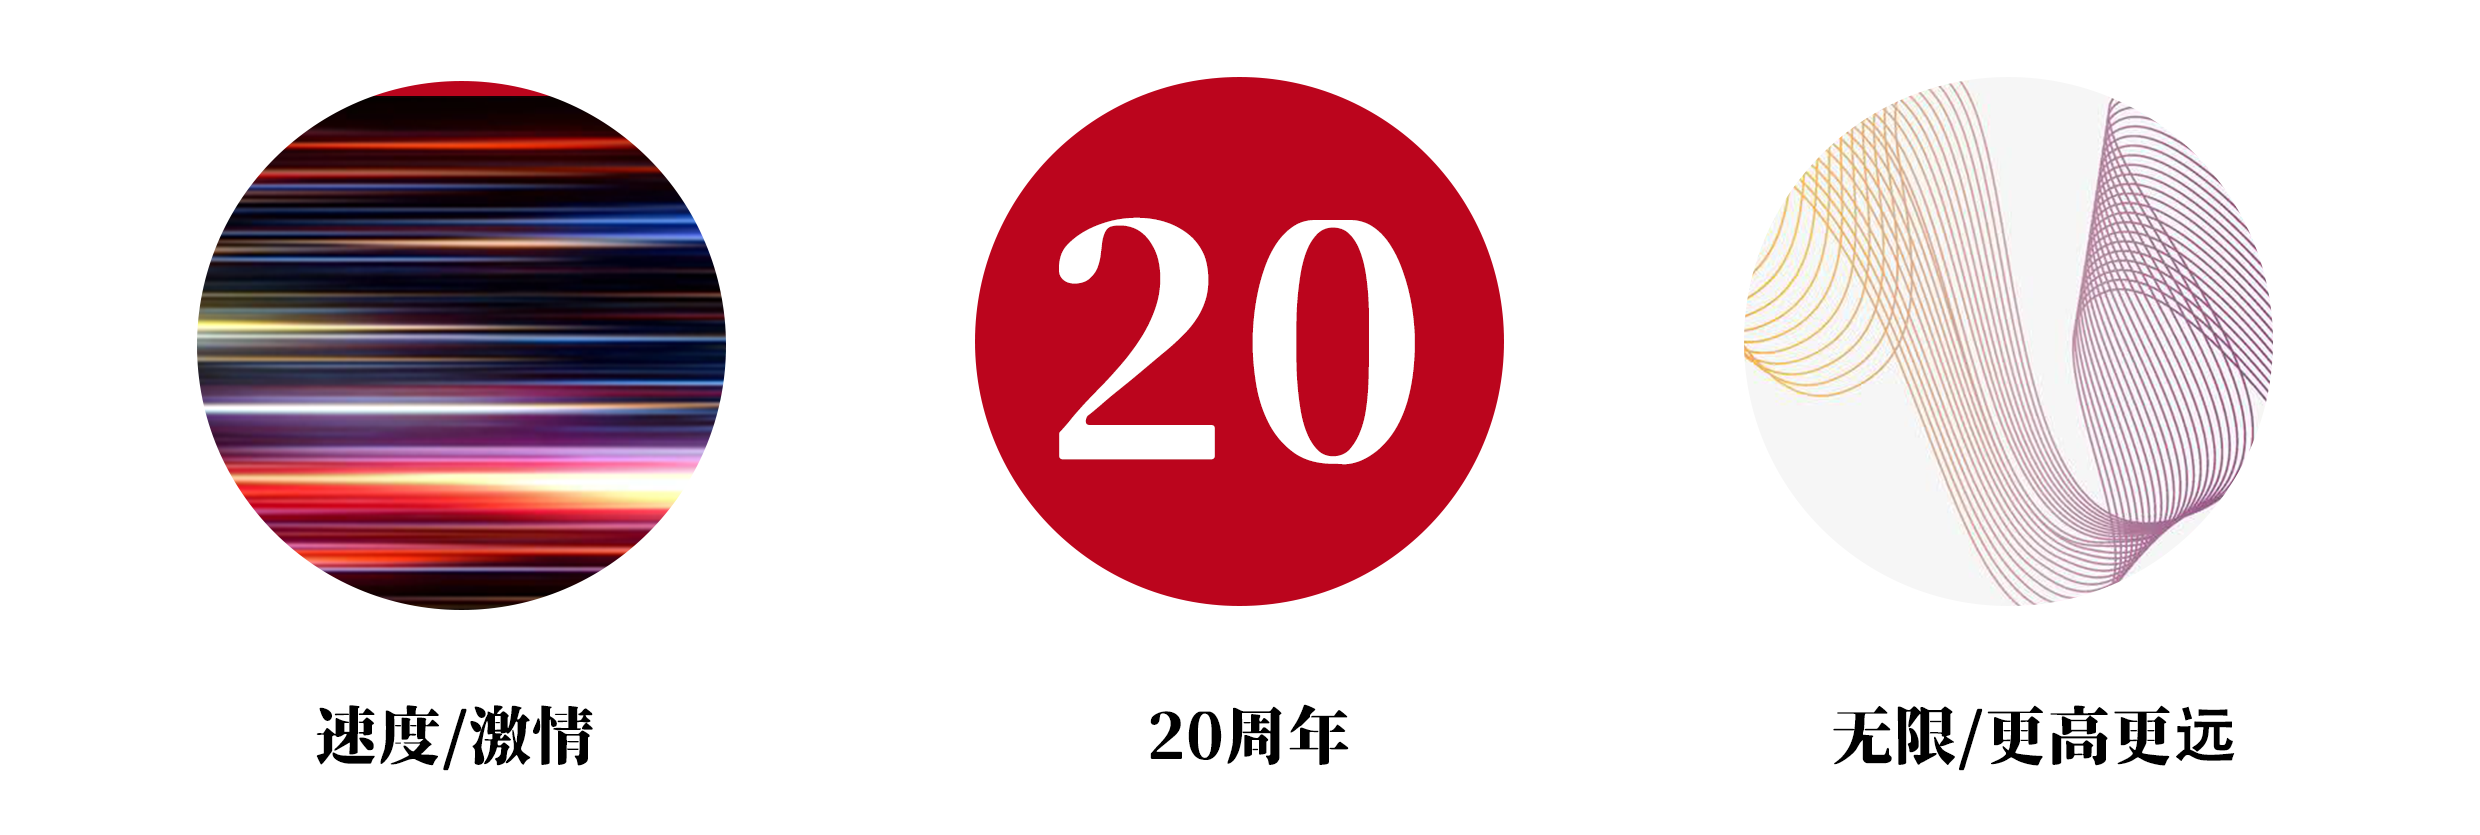 初心如磐，光耀前行｜磐石品牌20周年logo及slogan正式发布